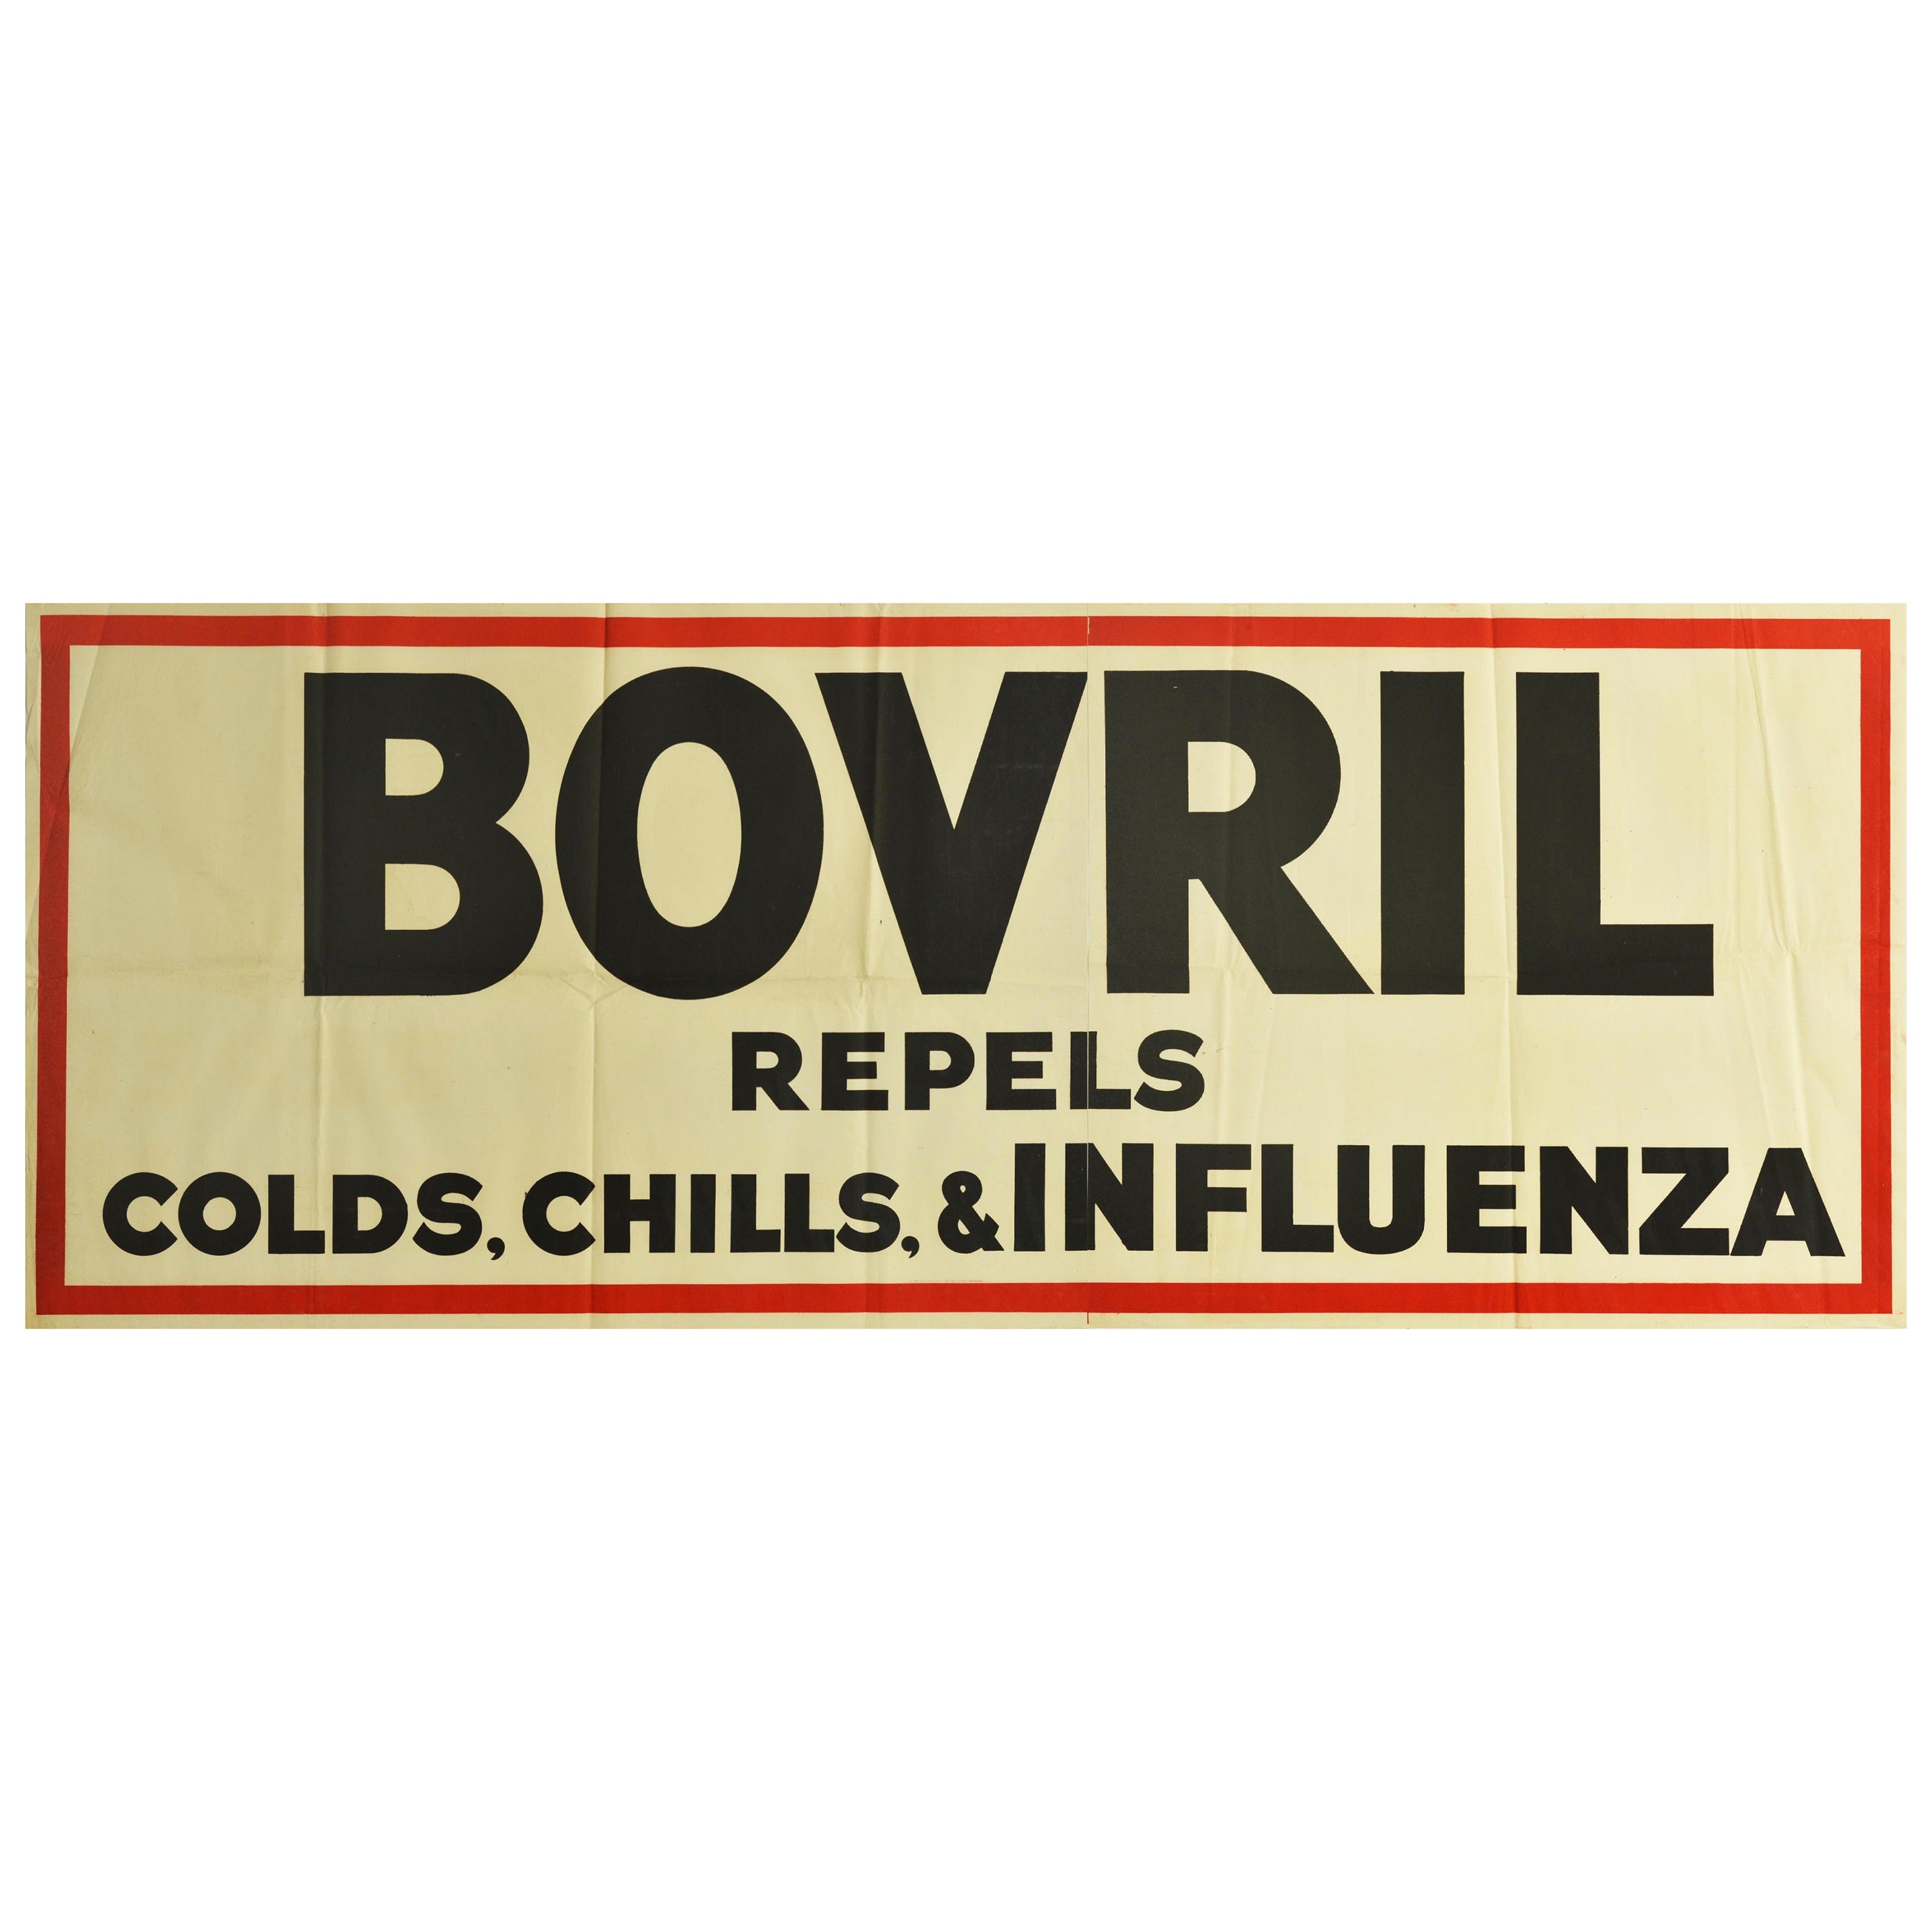 Original Vintage Poster Bovril Repels Colds Chills & Influenza Beef Drink Food